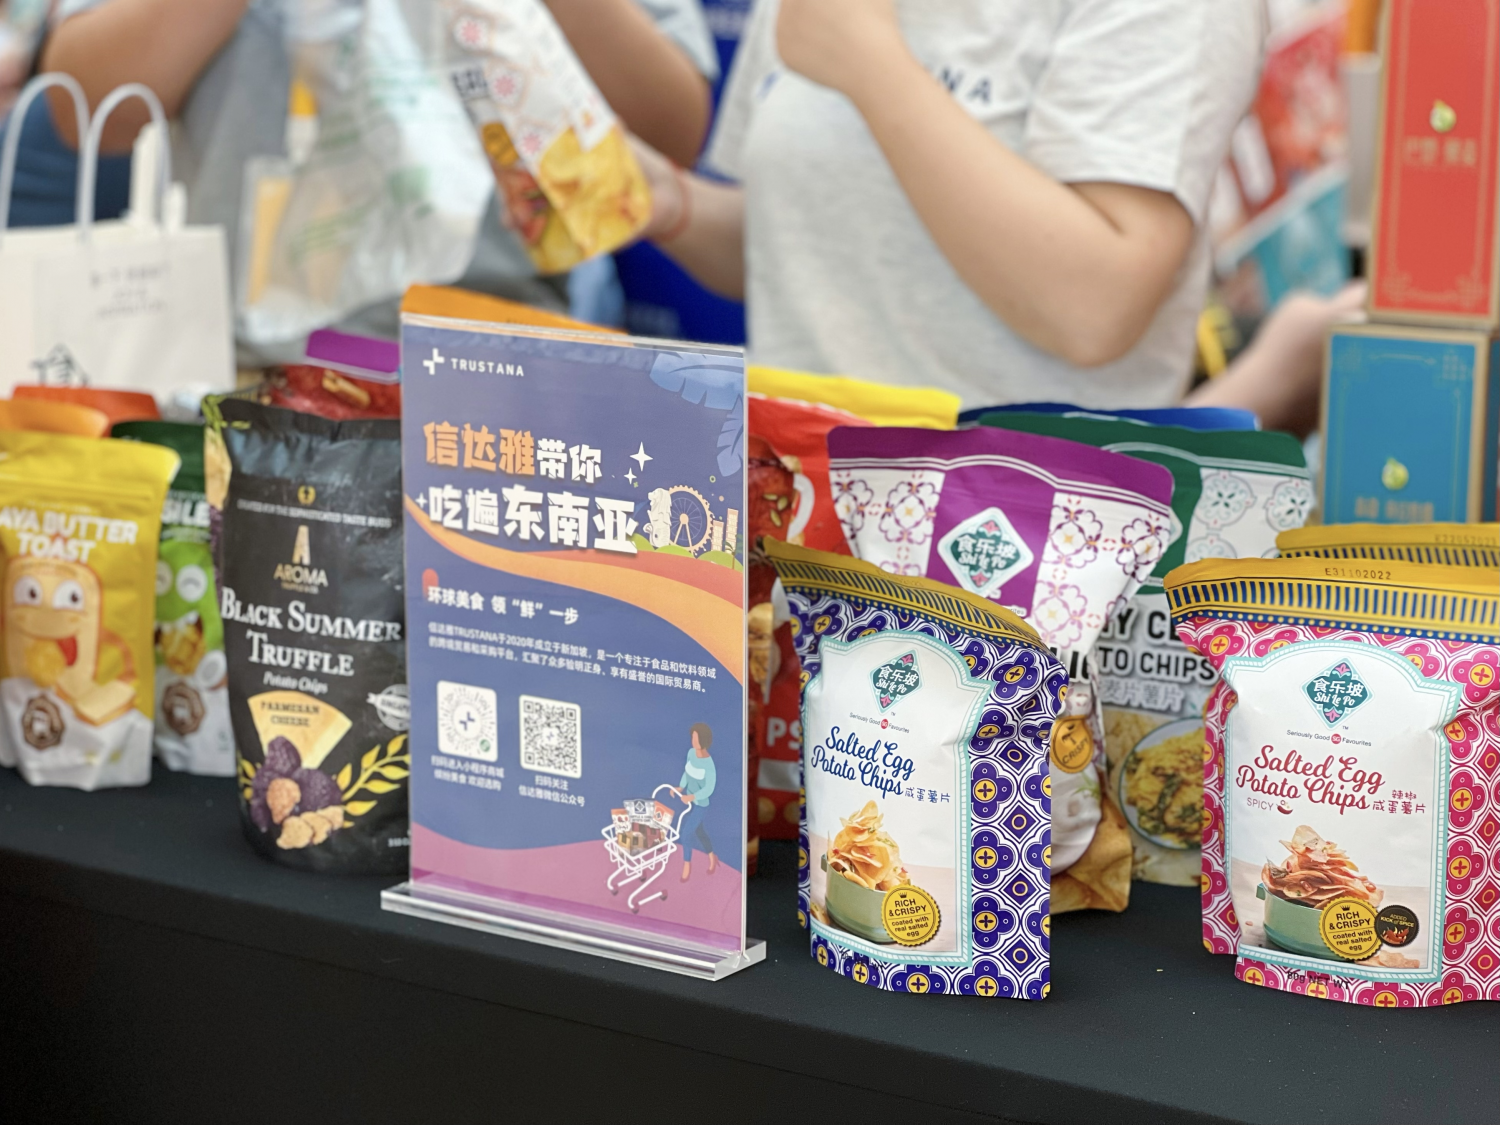 信达雅Trustana参与“上海环球美食节” 解锁东南亚零食新体验